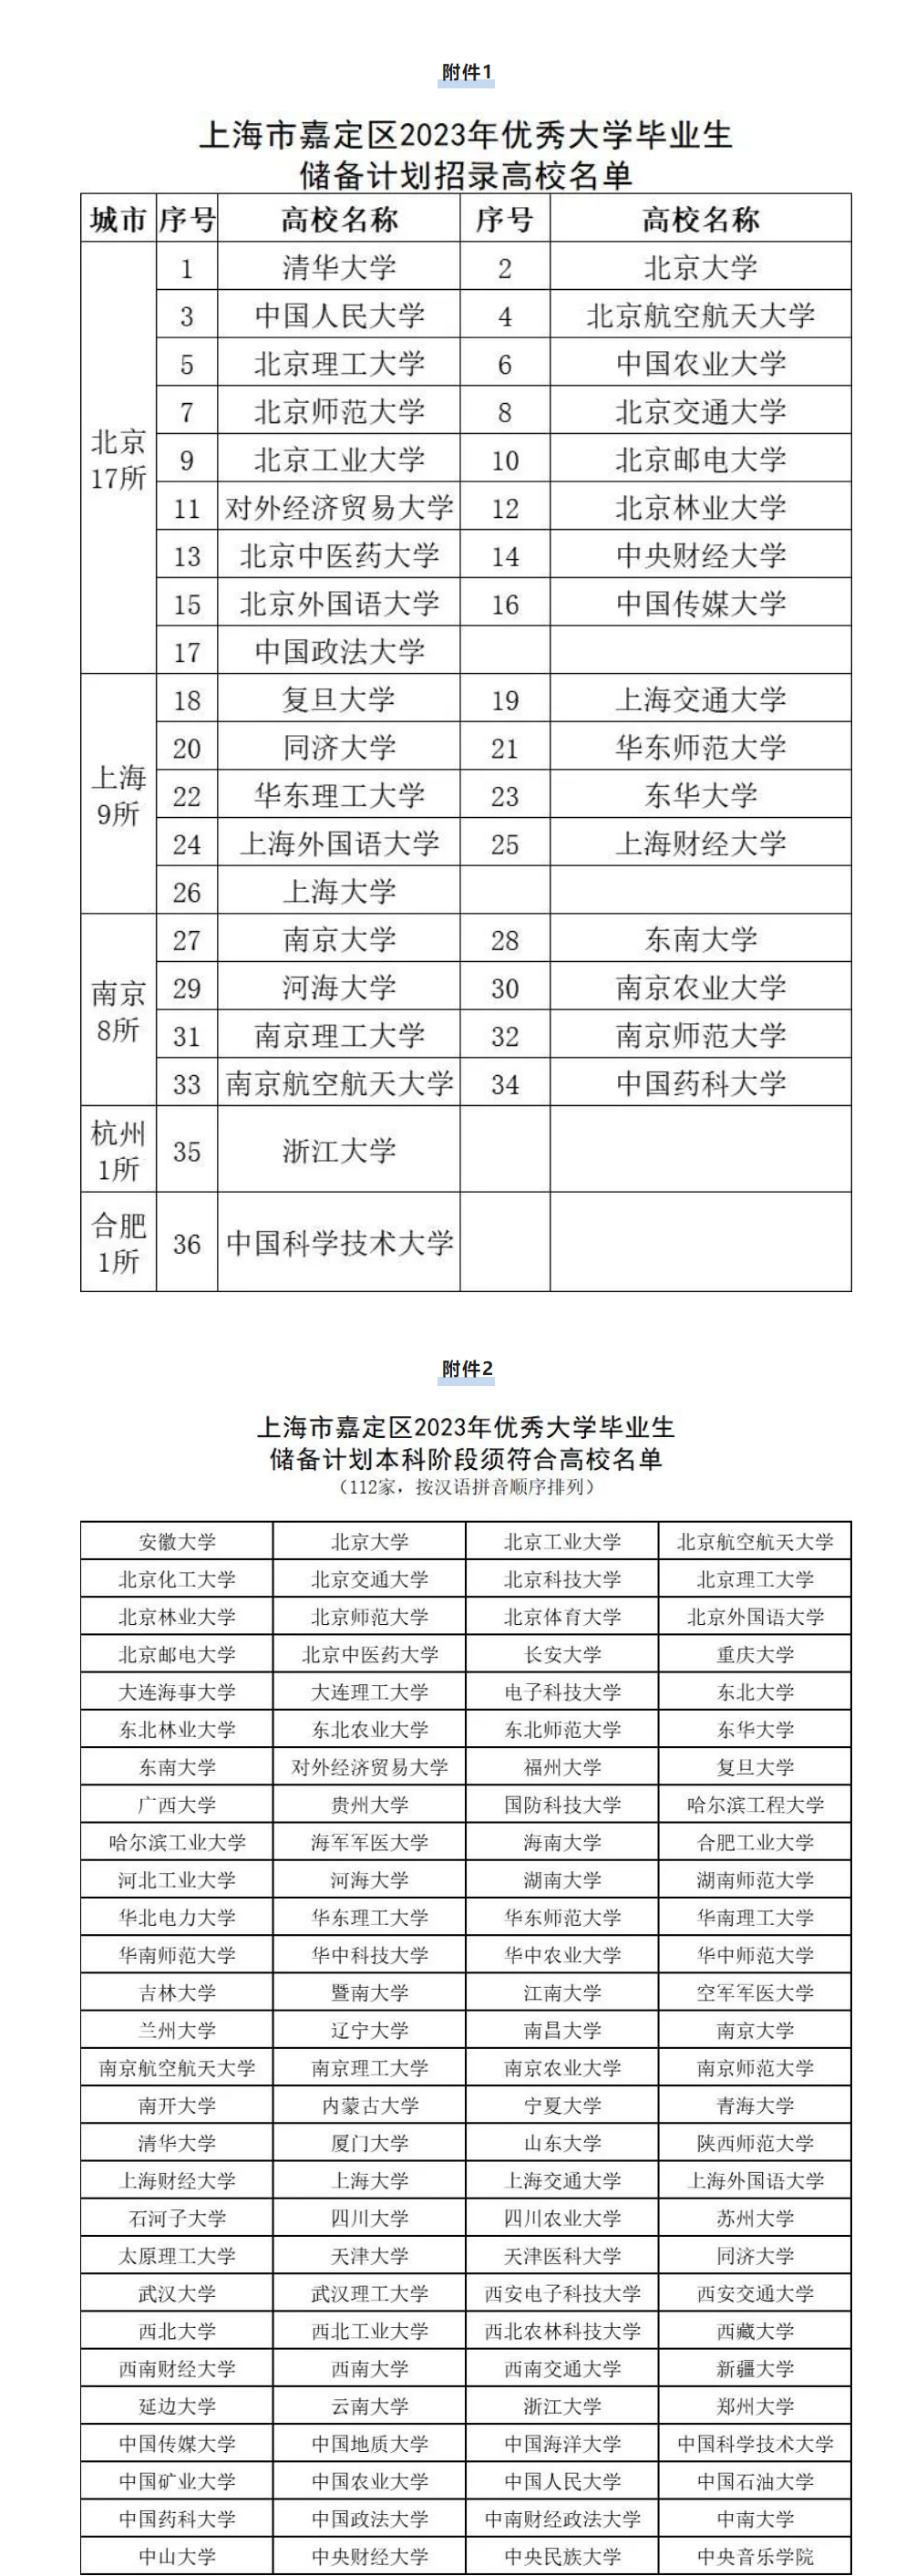 上海市嘉定区2023年优秀大学毕业生储备计划和选调生招录公告.png